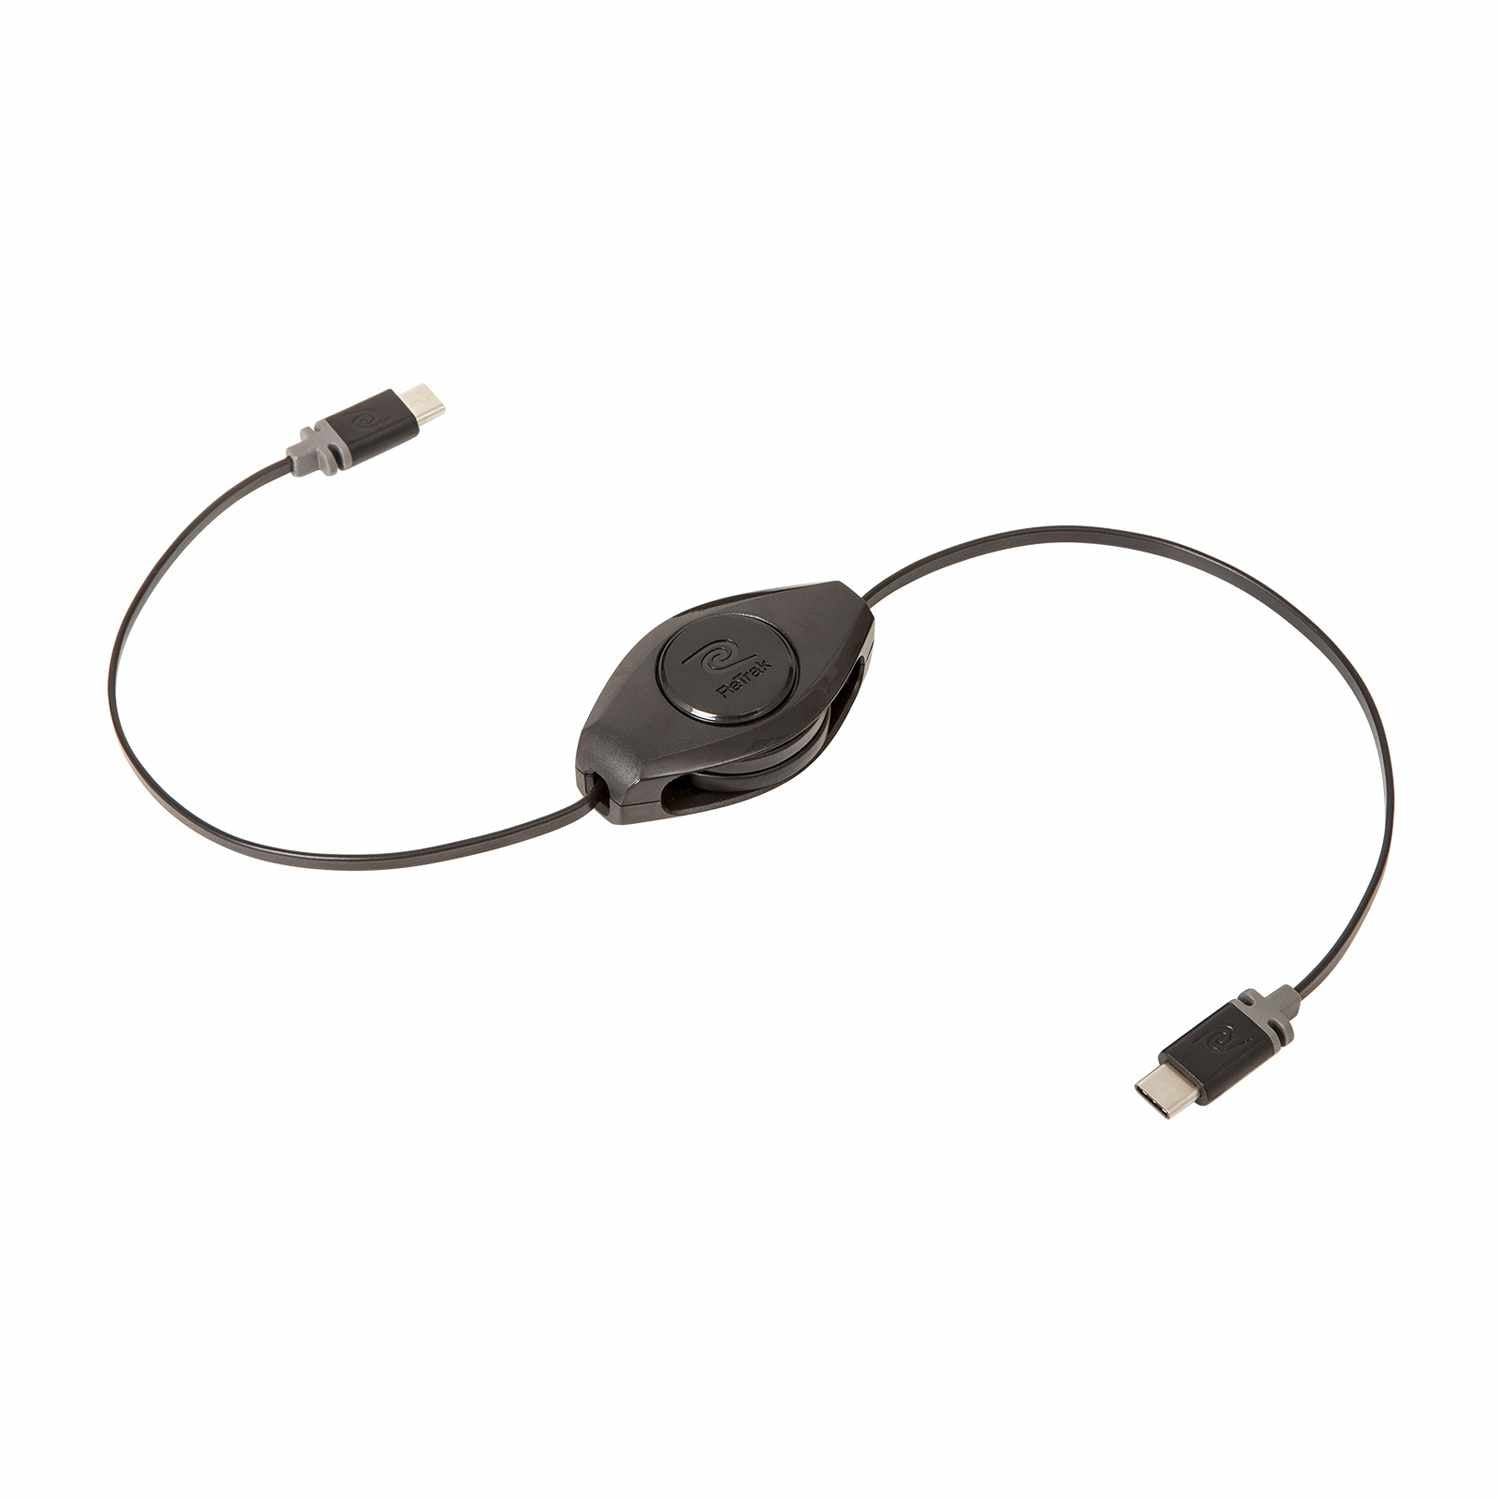 Helix/Retrak Retractable Premier USB-C to USB-C Cable